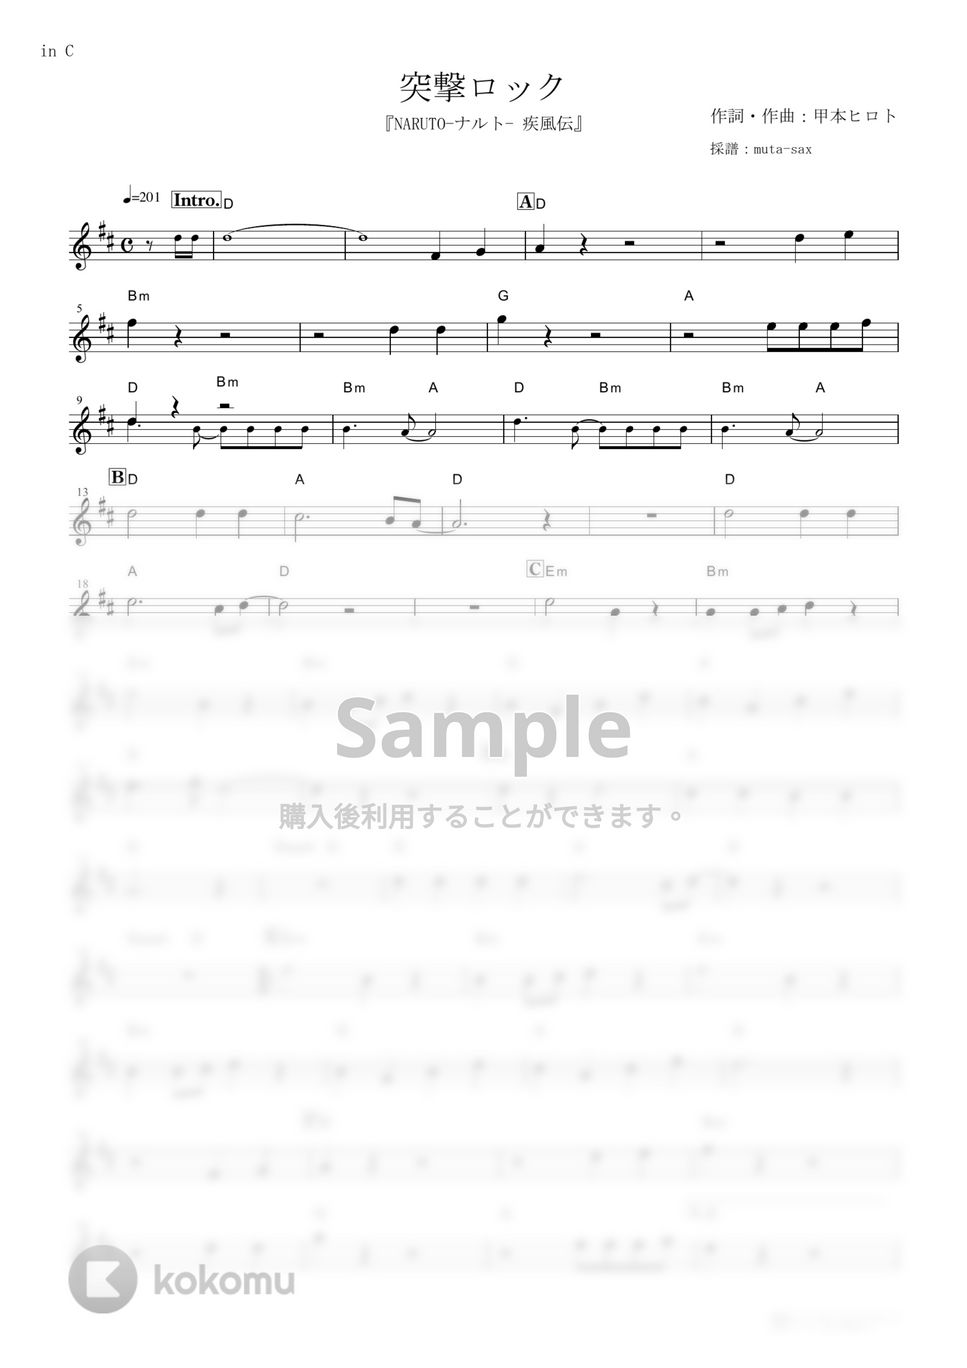 ザ・クロマニヨンズ - 突撃ロック (『NARUTO-ナルト- 疾風伝』 / in C) by muta-sax